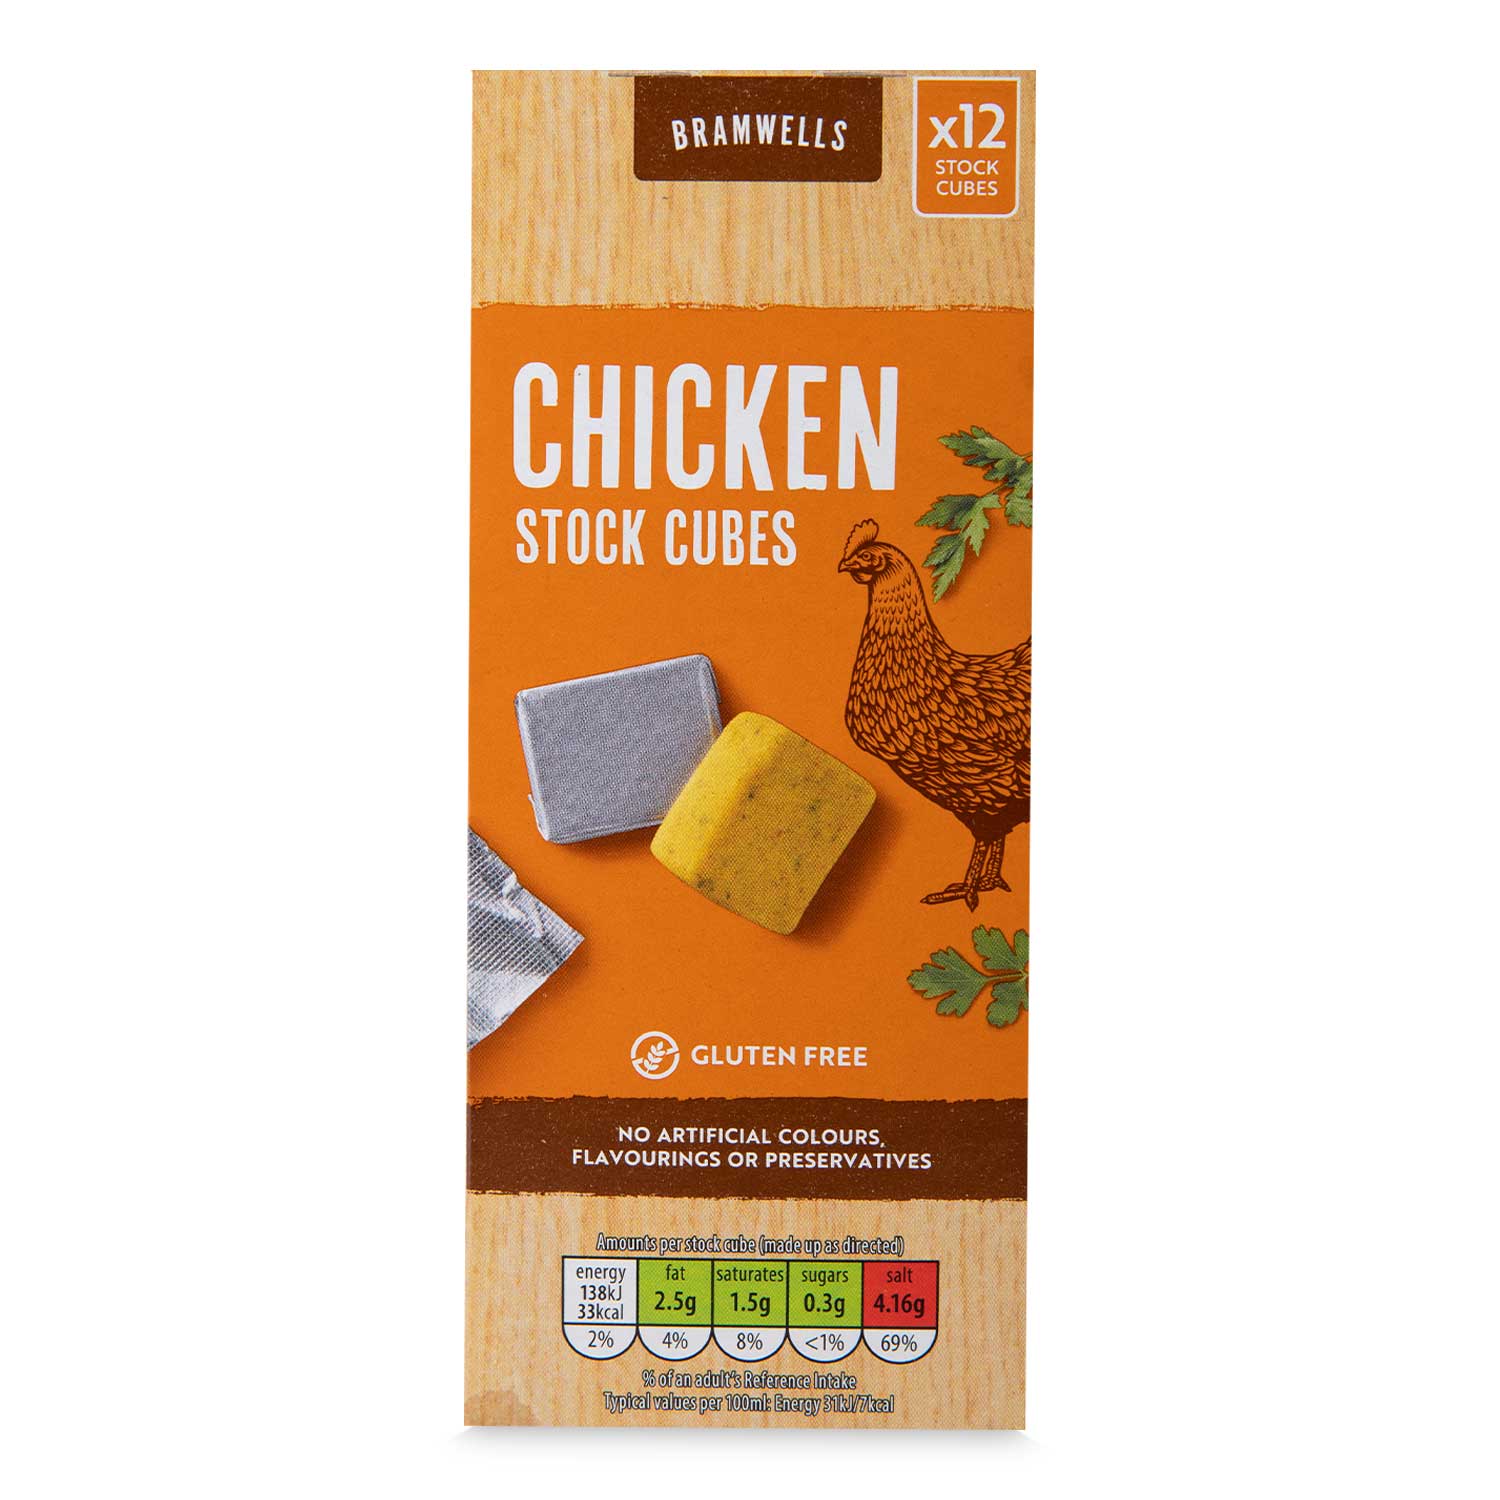 Bramwells Chicken Stock Cubes 120g/12 Pack